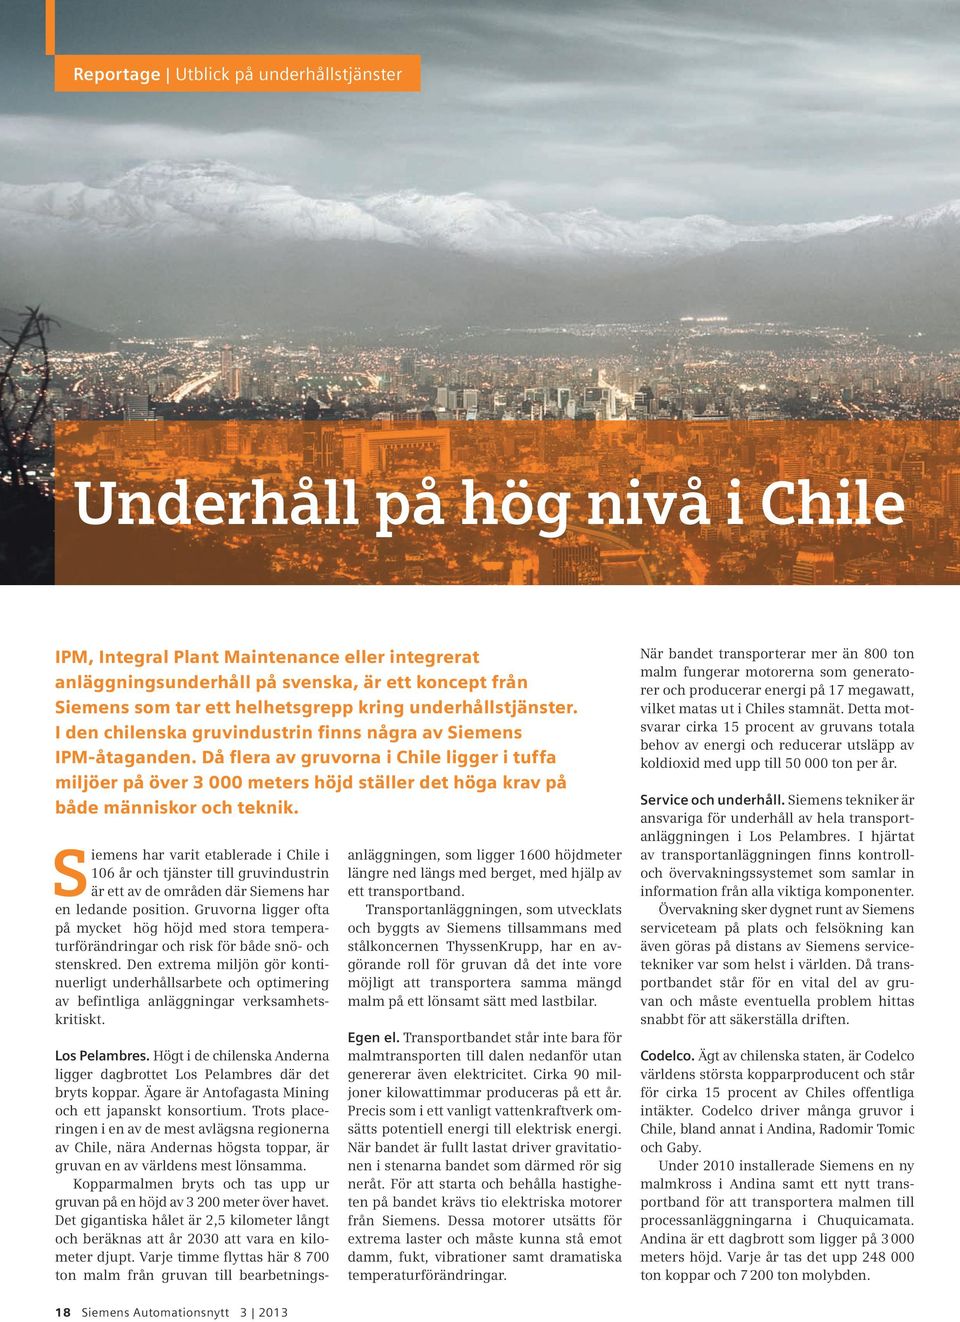 Då flera av gruvorna i Chile ligger i tuffa miljöer på över 3 000 meters höjd ställer det höga krav på både människor och teknik.